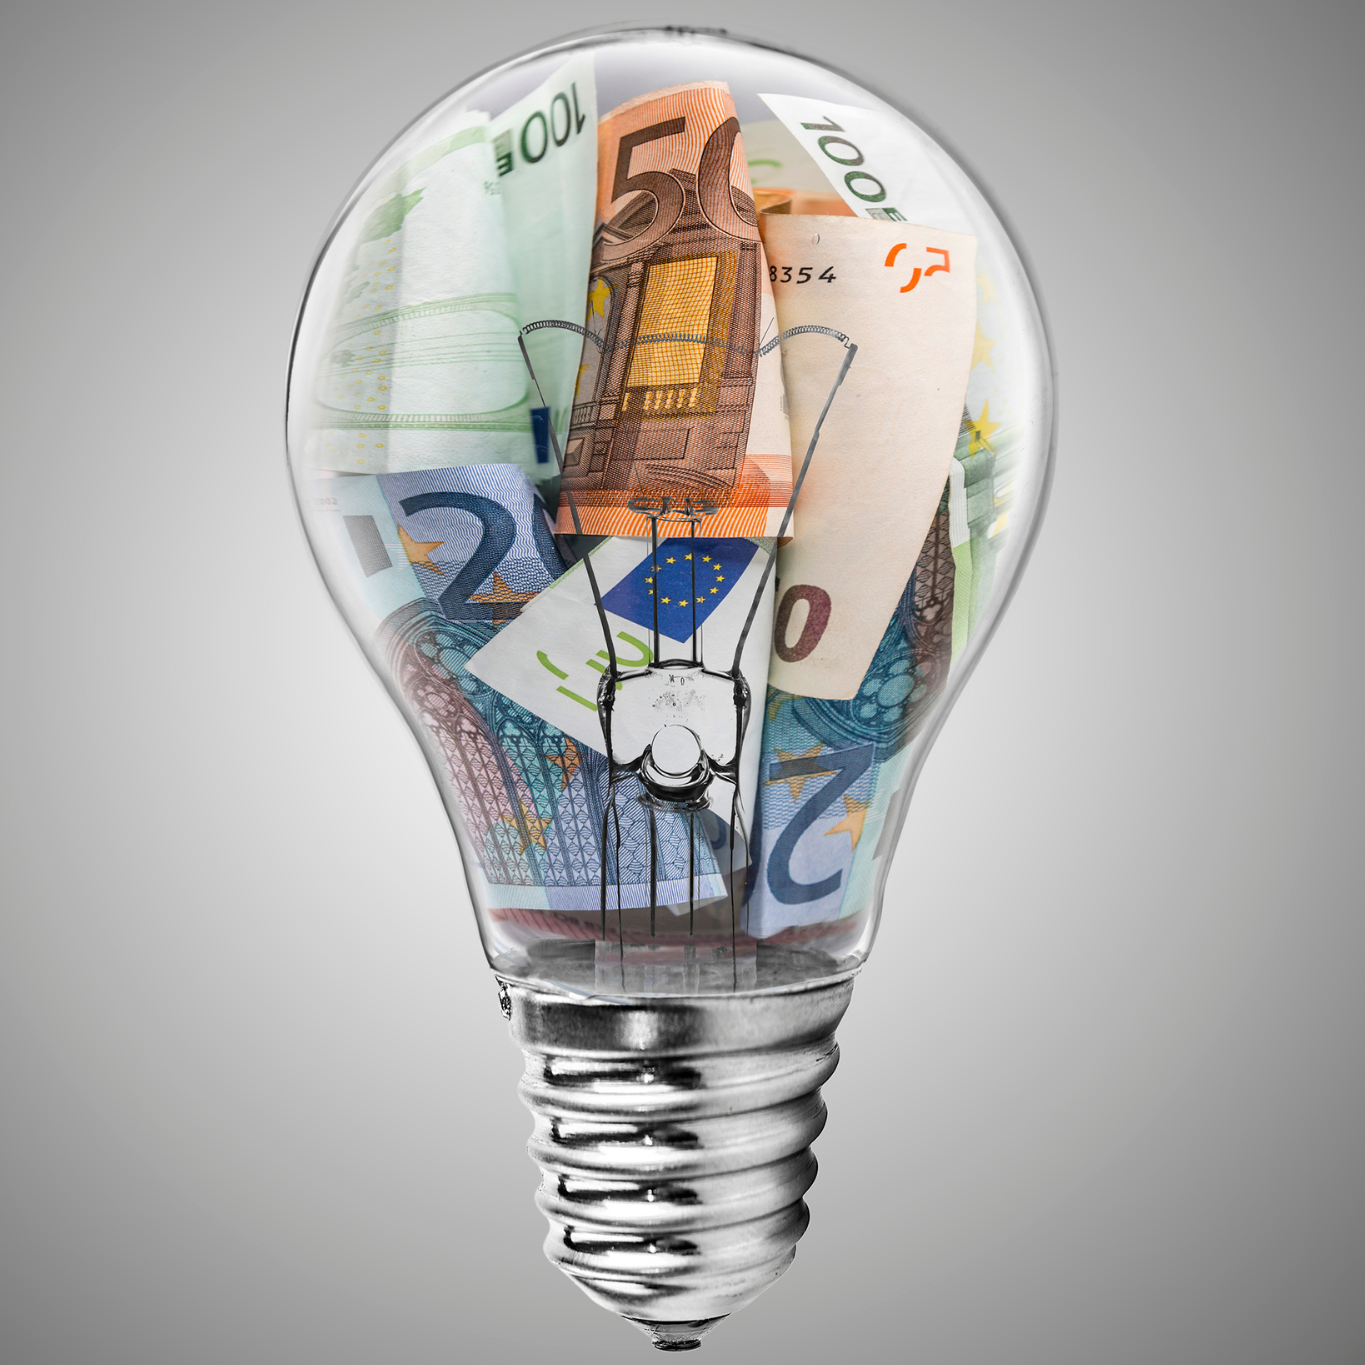 Energiekostenpauschale  bringt Entlastung für Kleinst-/Kleinunternehmer:innen